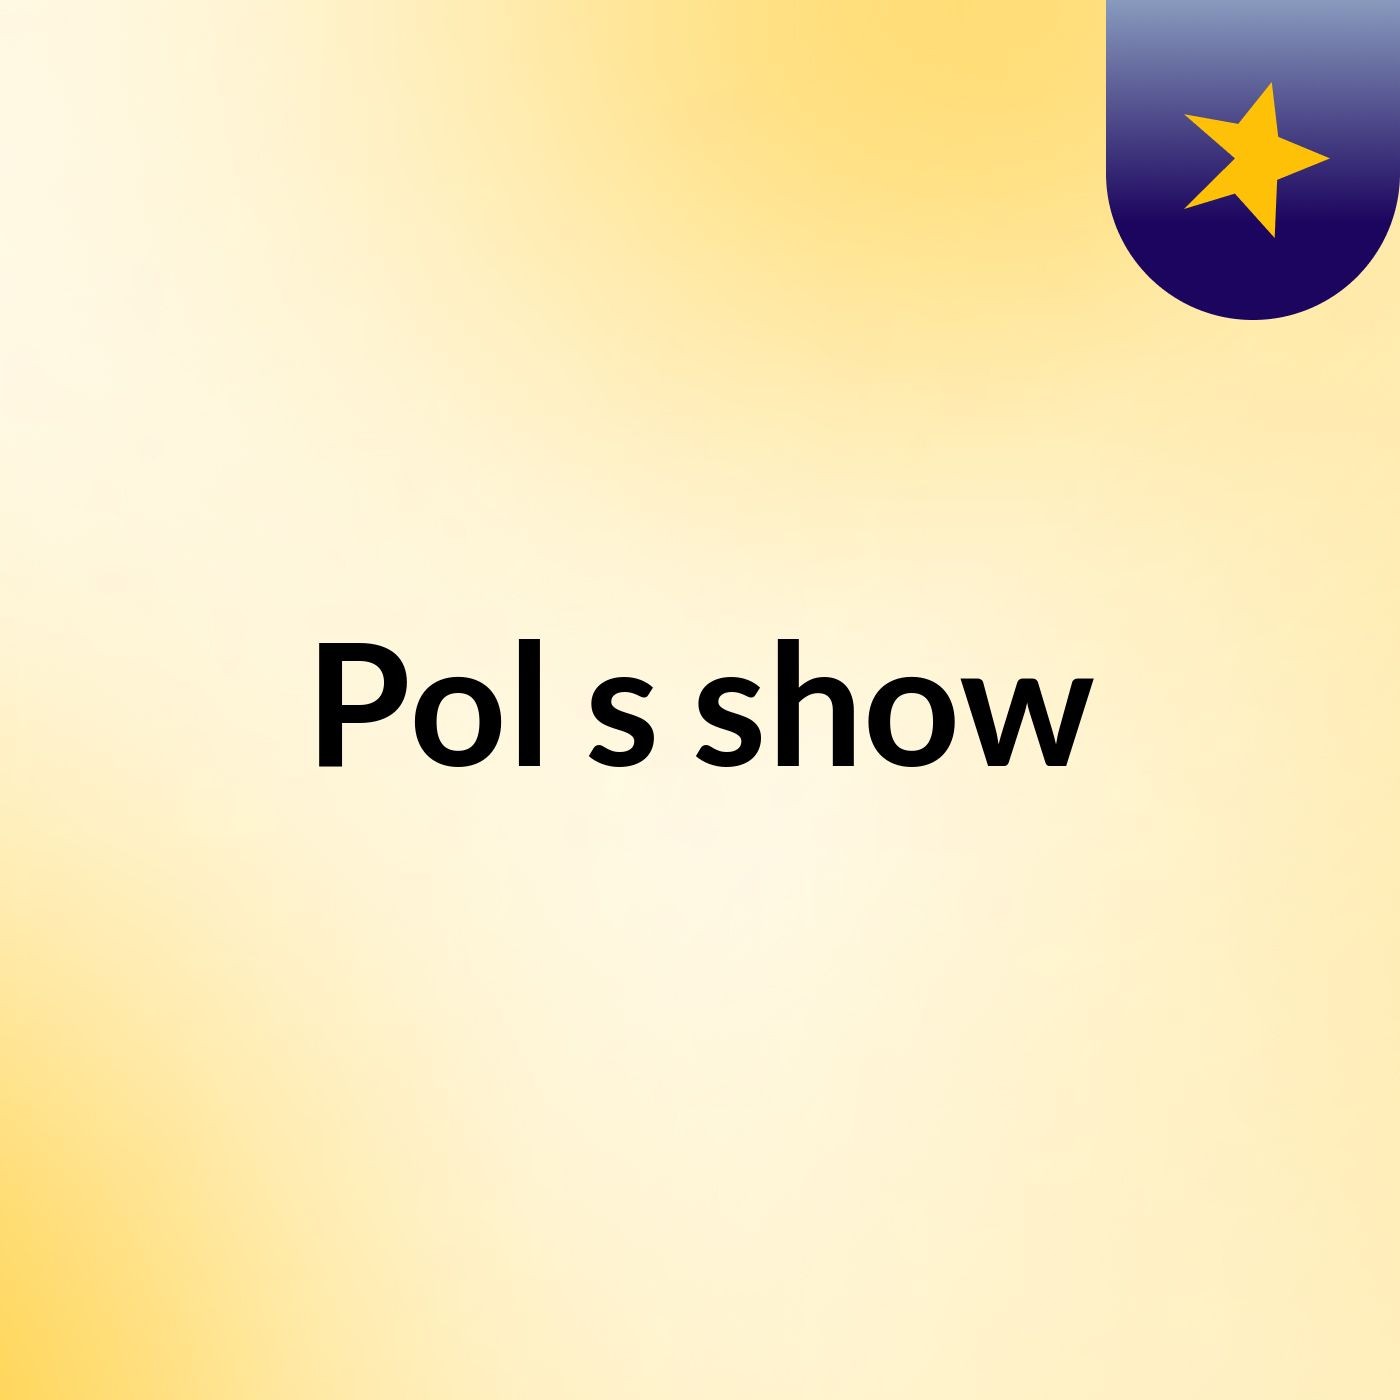 Pol's show